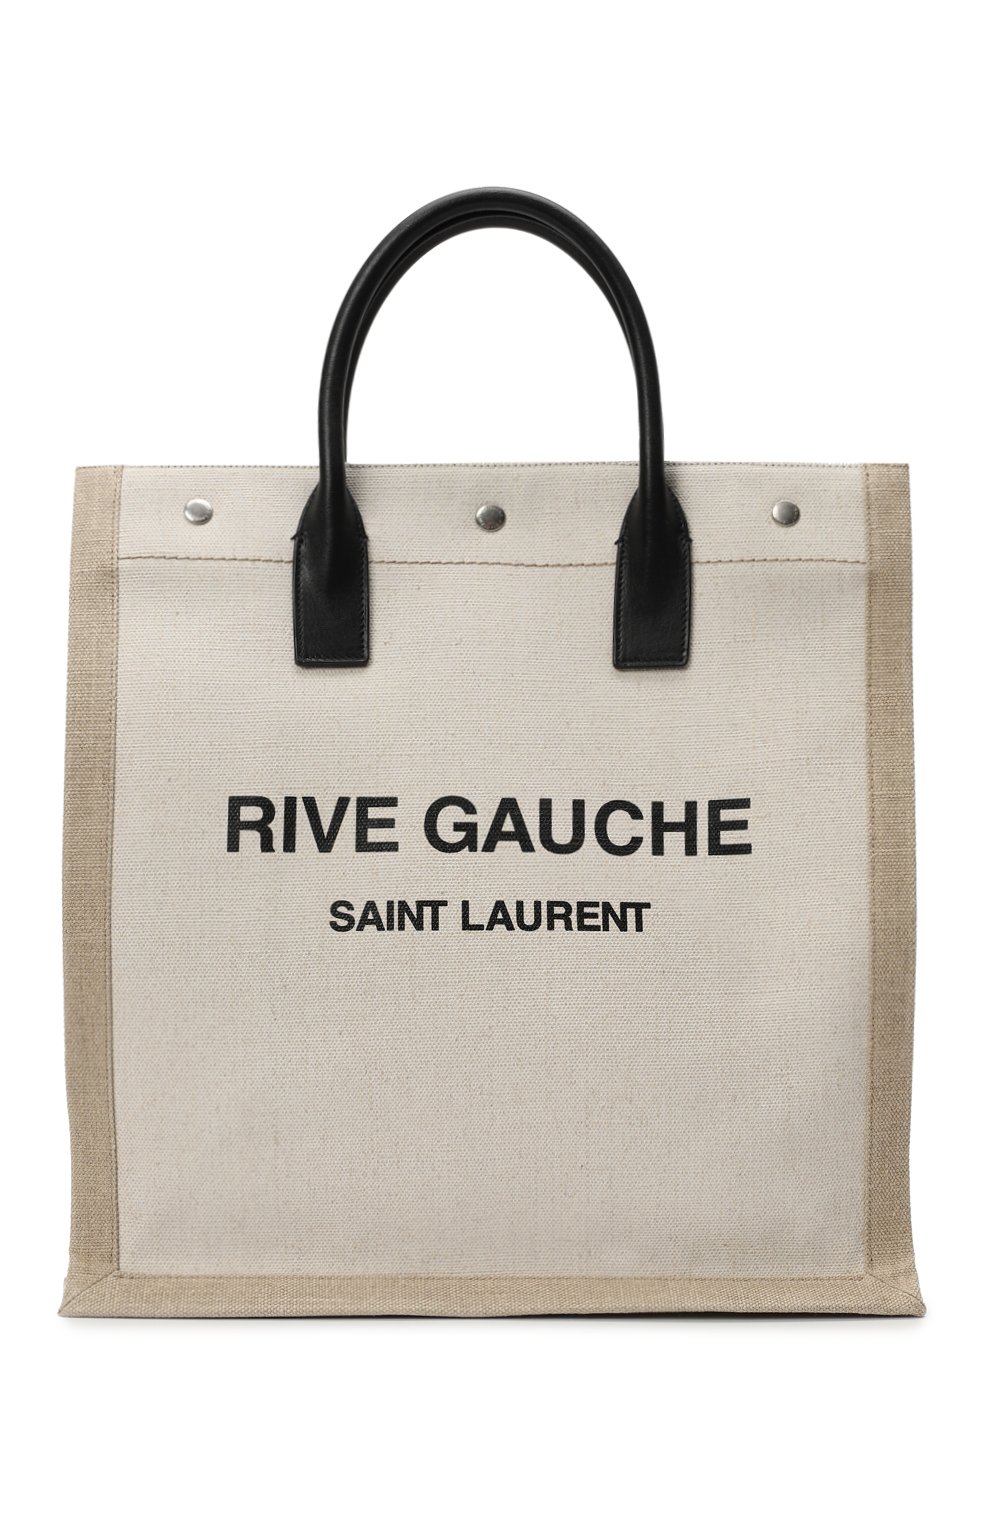 Сумка-тоут Rive Gauche | Saint Laurent | Бежевый - 1